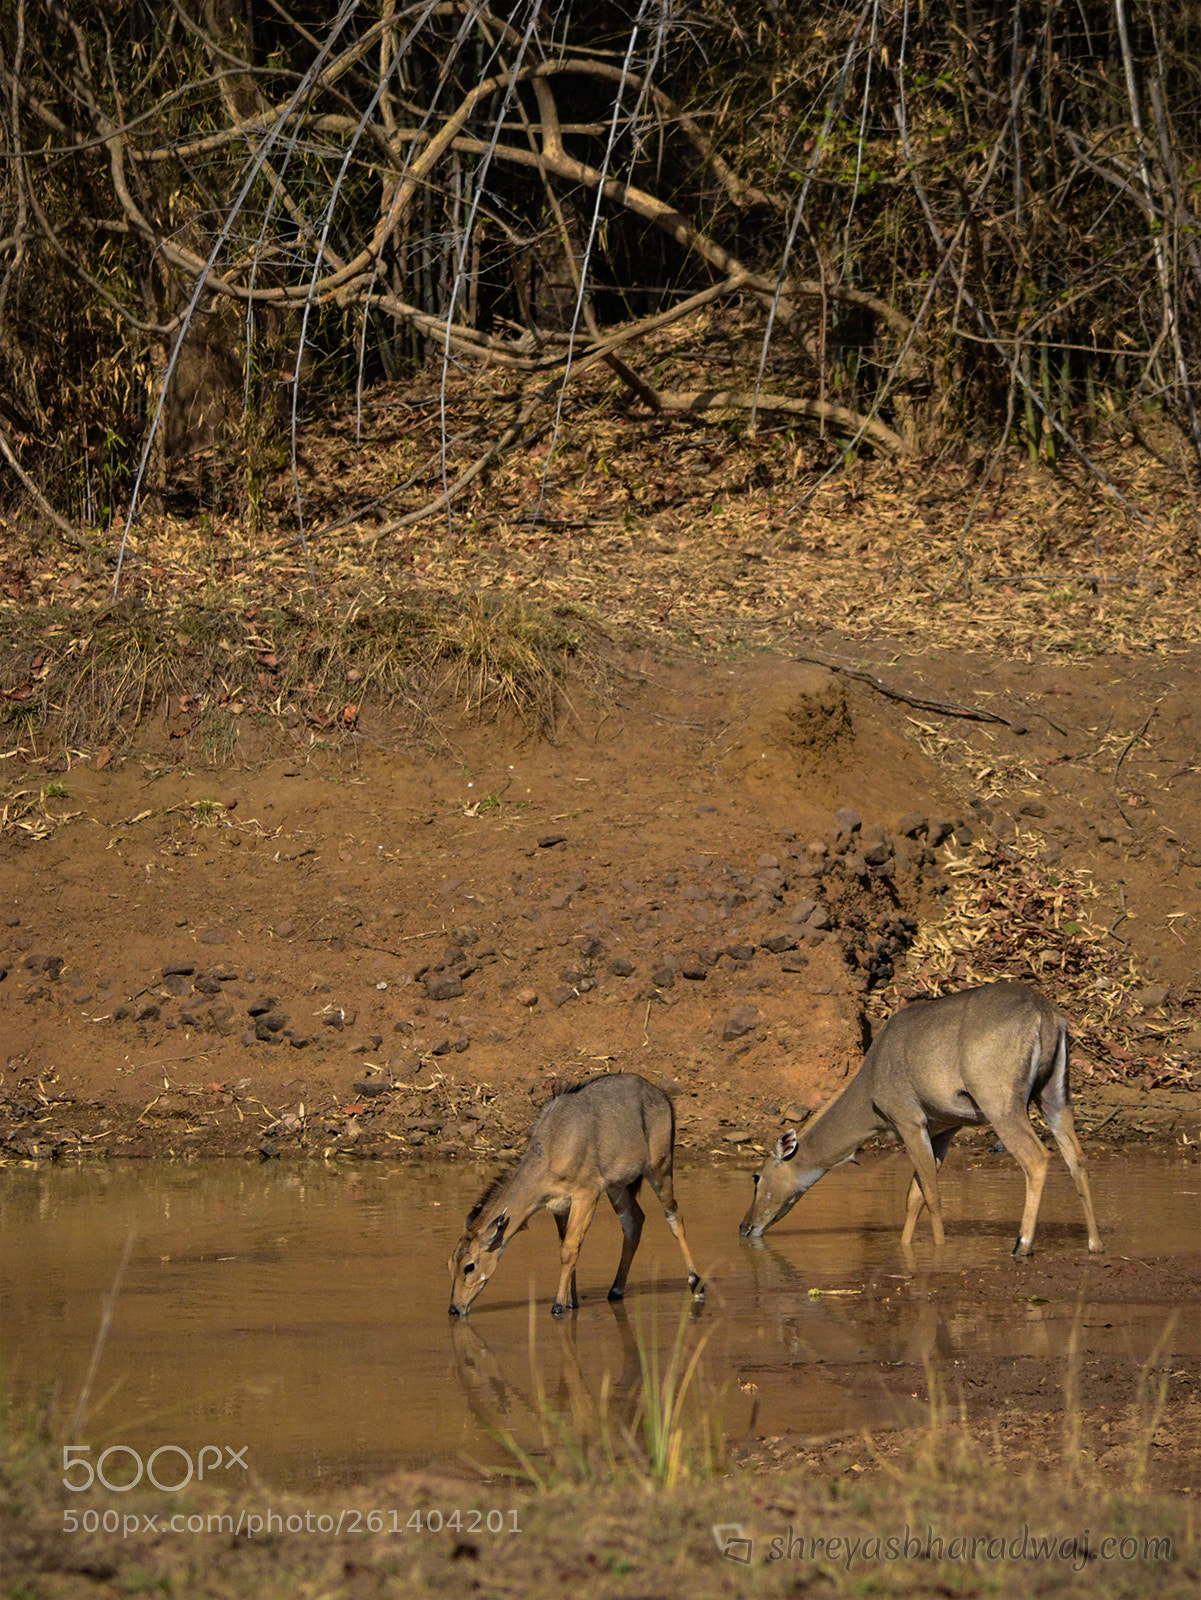 Nikon D3100 sample photo. Sambar deer photography